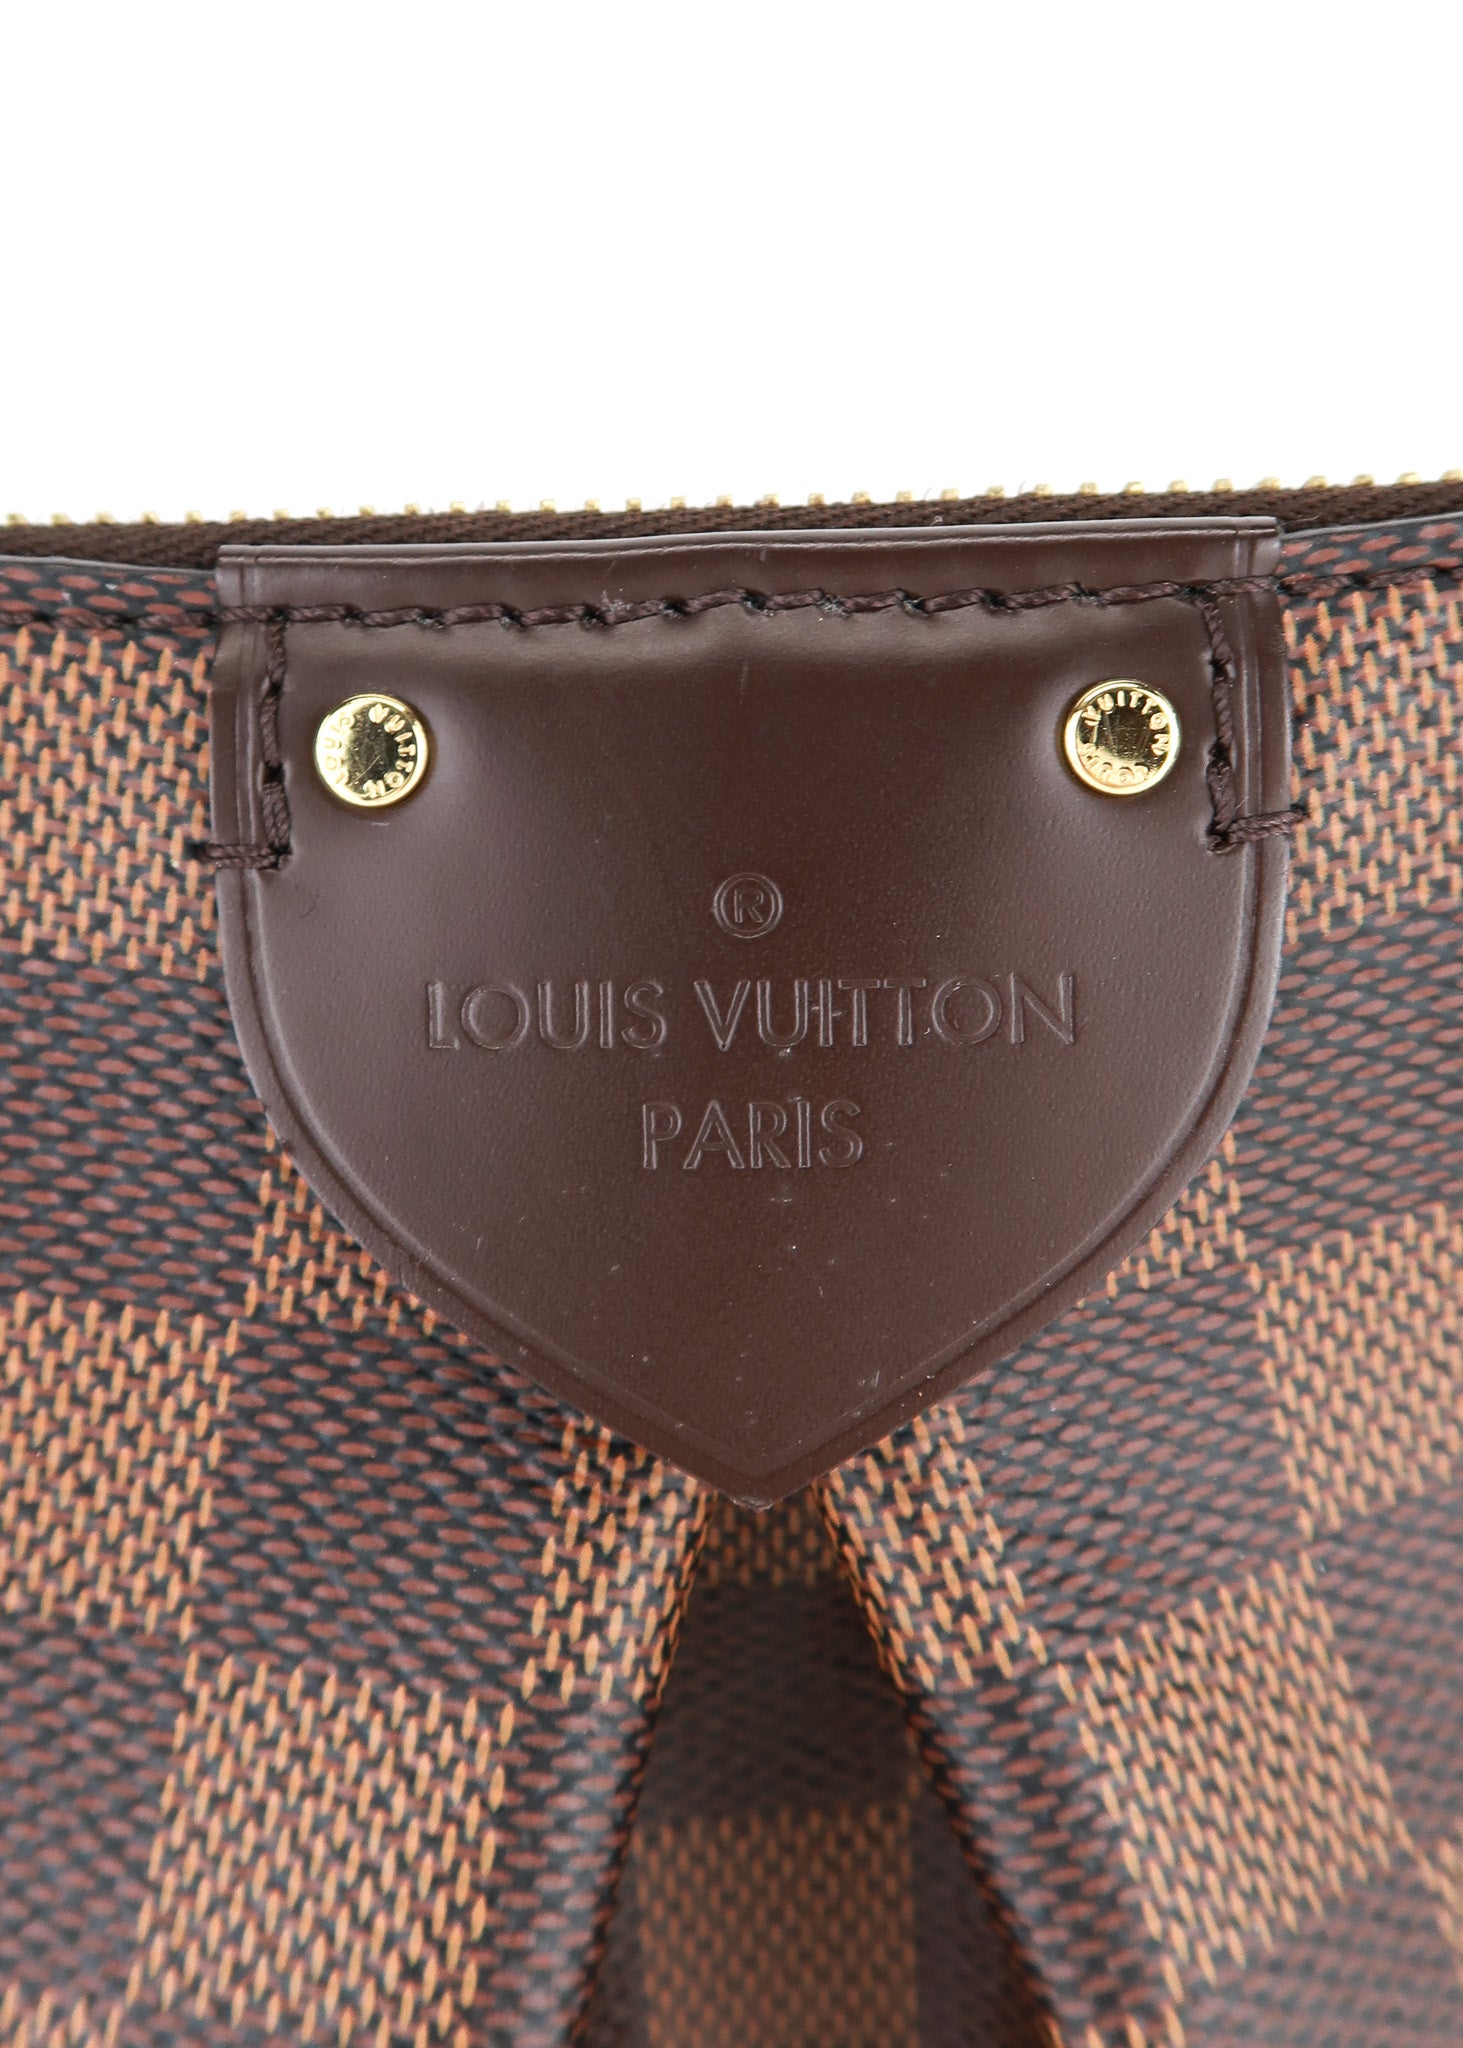 Authentic Louis Vuitton Siena MM